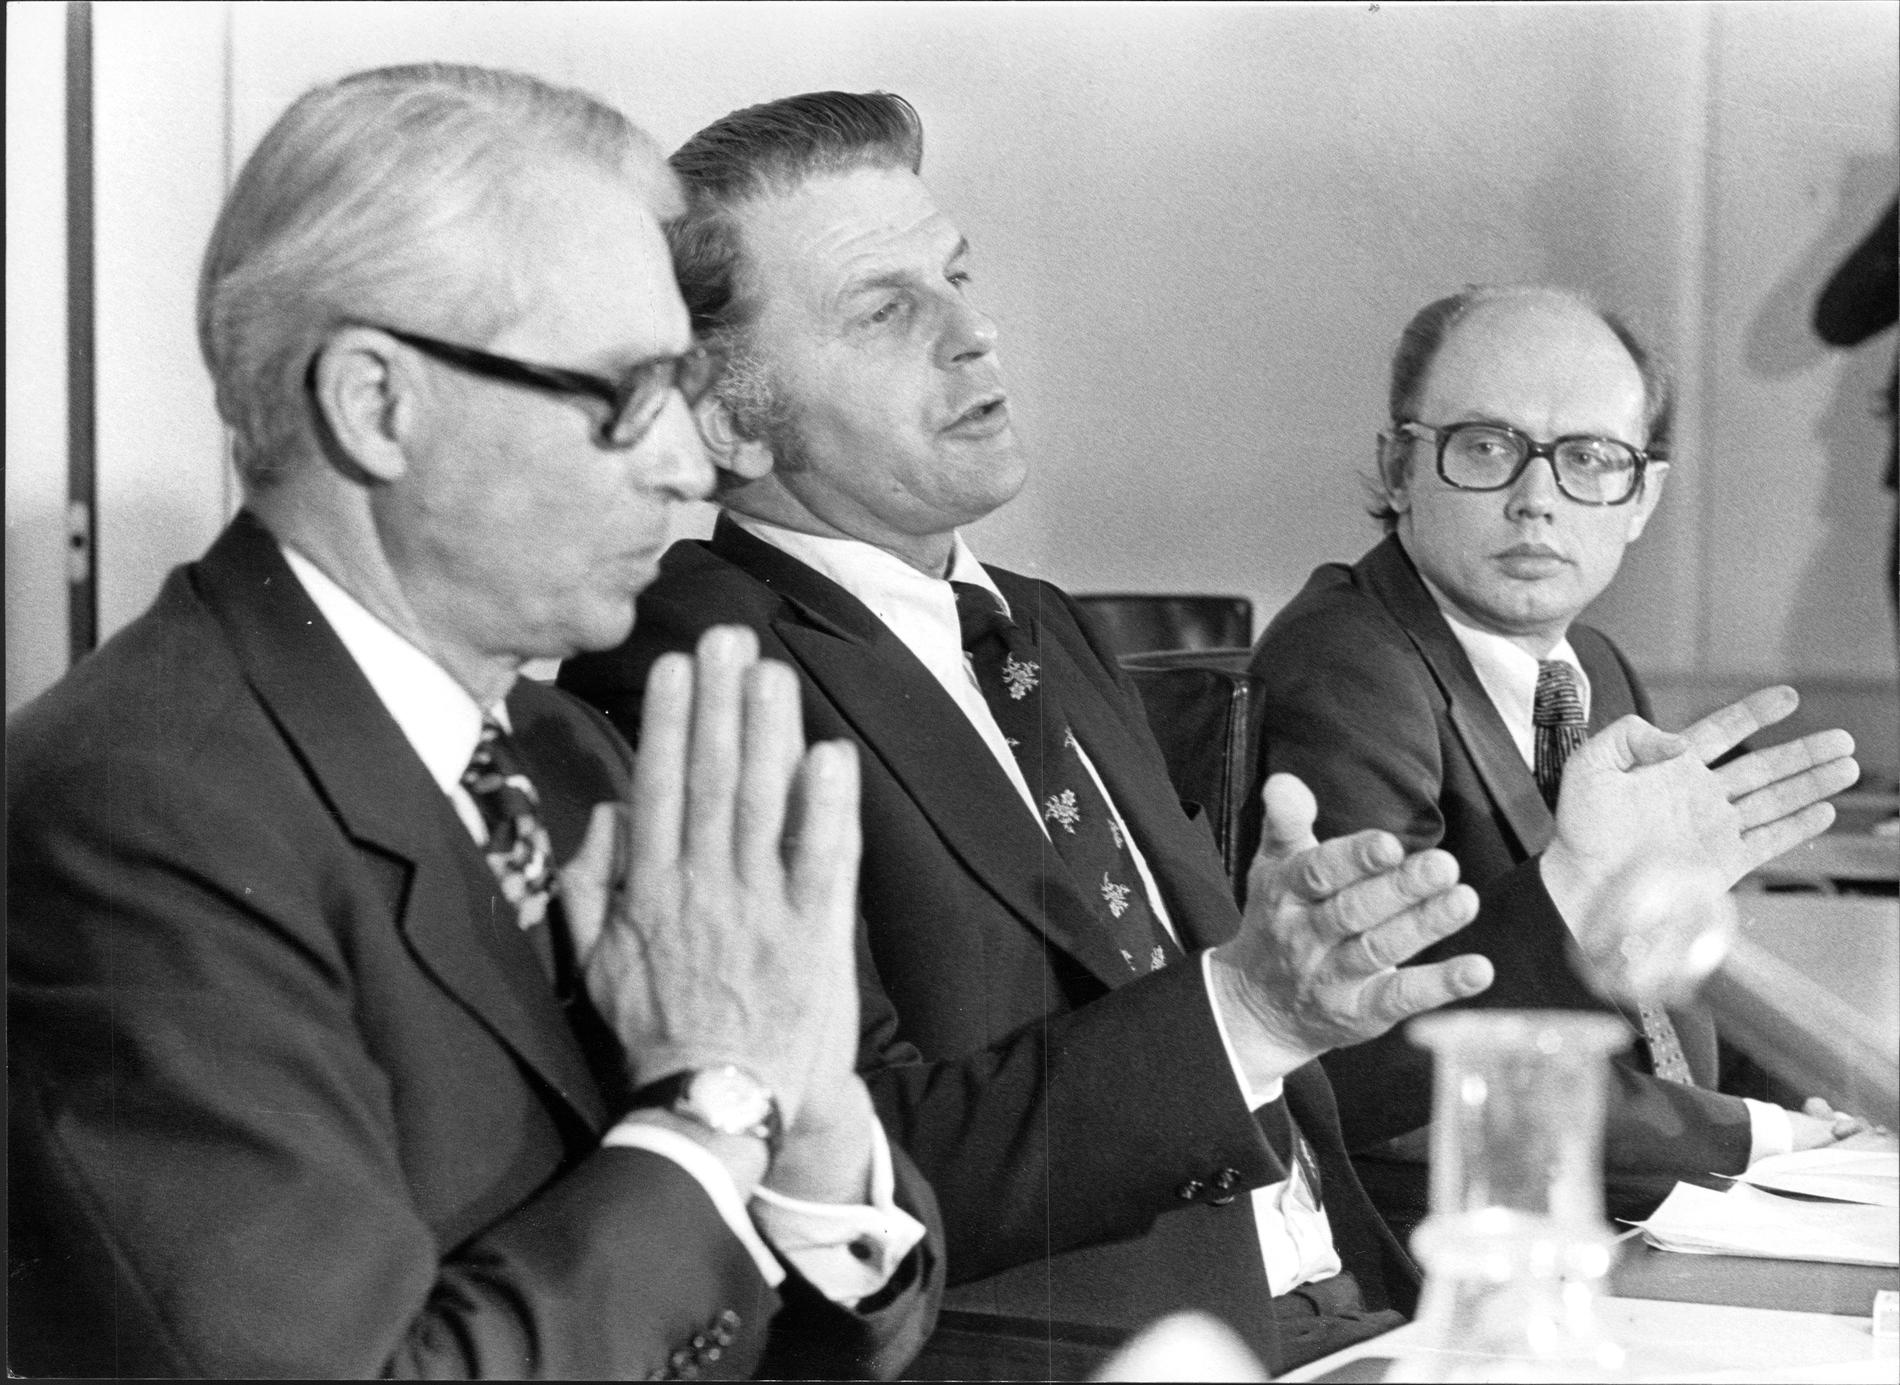 Den nya regeringen efter valet 1976. Gösta Bohman, partiledare (m) och finansminister, Thorbjö rn F älldin, partiledare (c) och Sveriges statsminister samt Per Ahlmark, partiledare (fp) och arbetsmarknadsminister och vice statsminister.